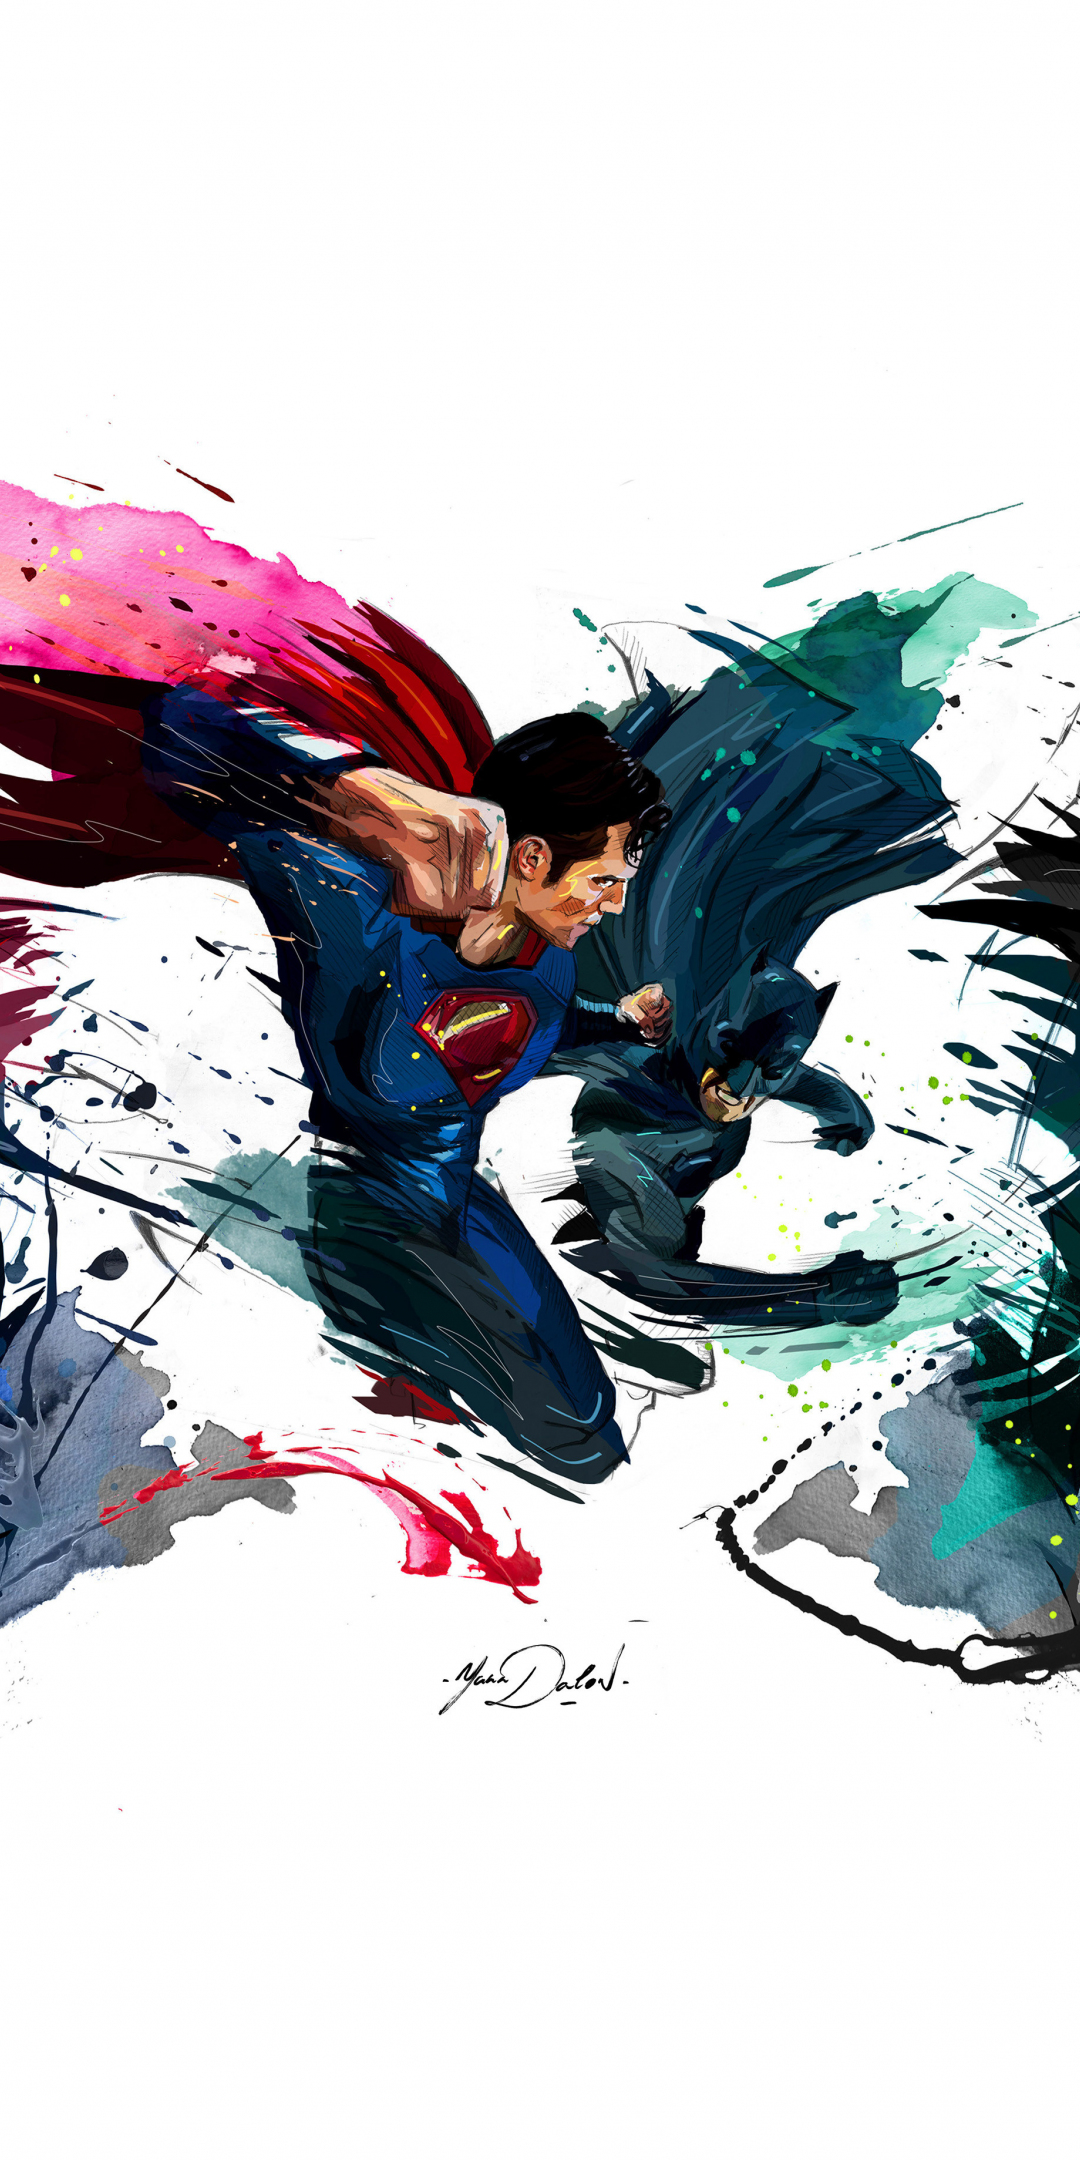 Batman vs superman, 4k, sketch artwork, 1080x2160 wallpaper